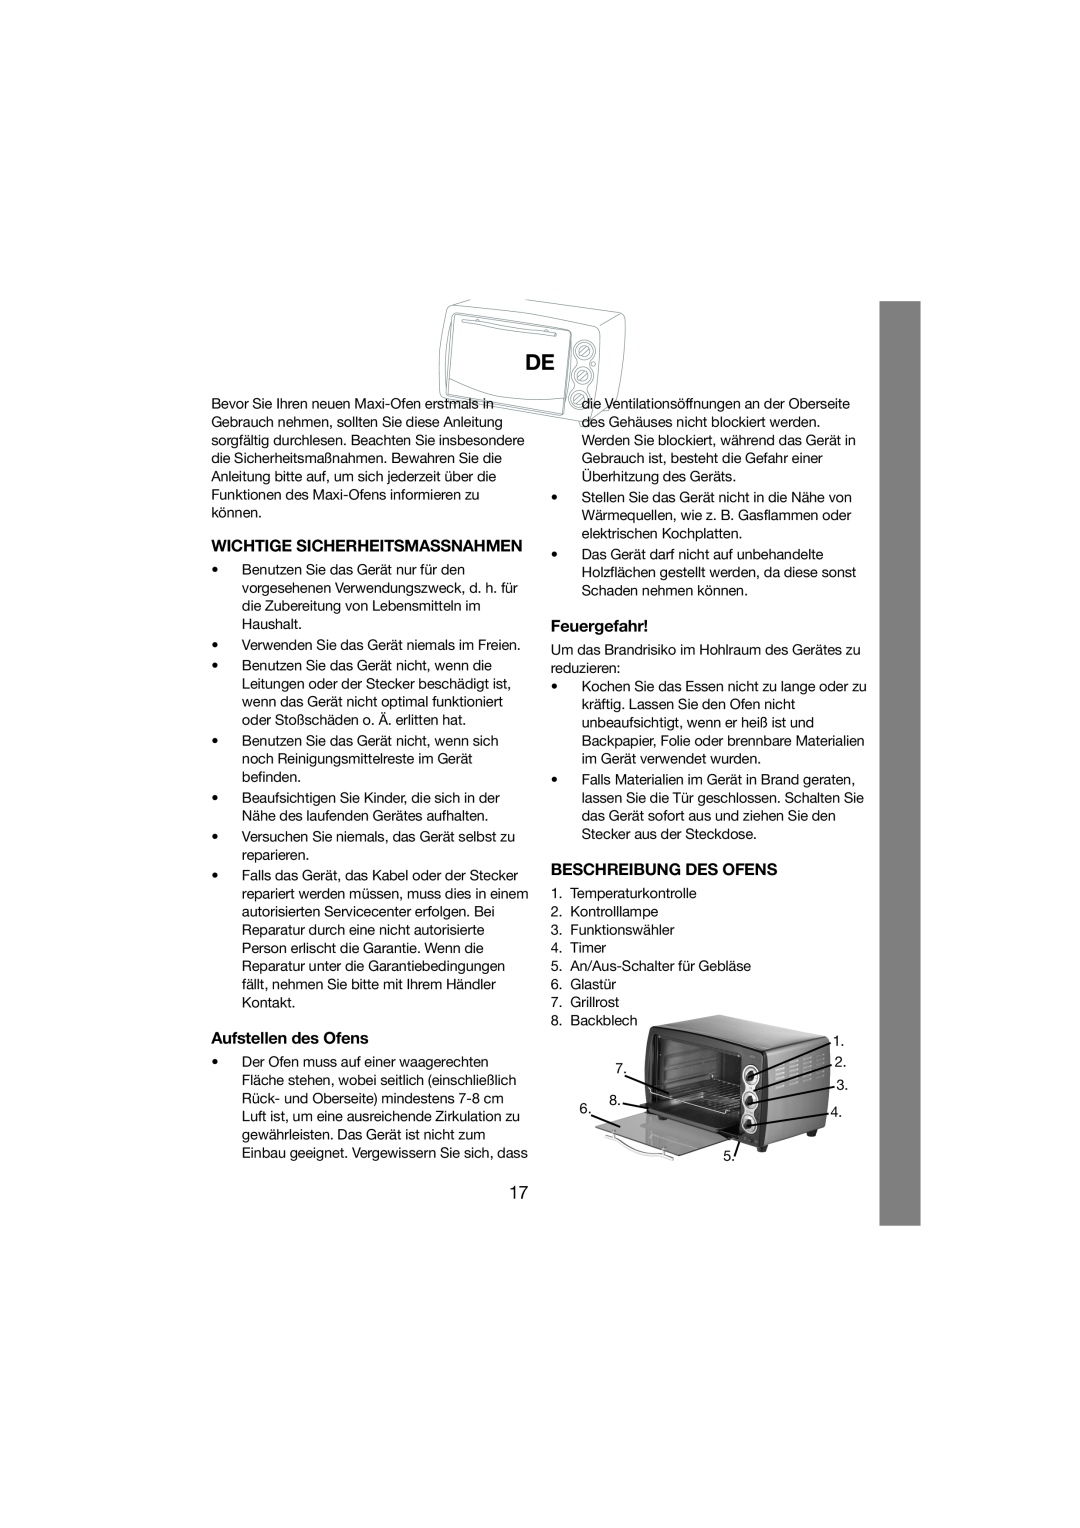 Melissa 251-003 manual Wichtige Sicherheitsmassnahmen, Aufstellen des Ofens, Feuergefahr, Beschreibung Des Ofens 